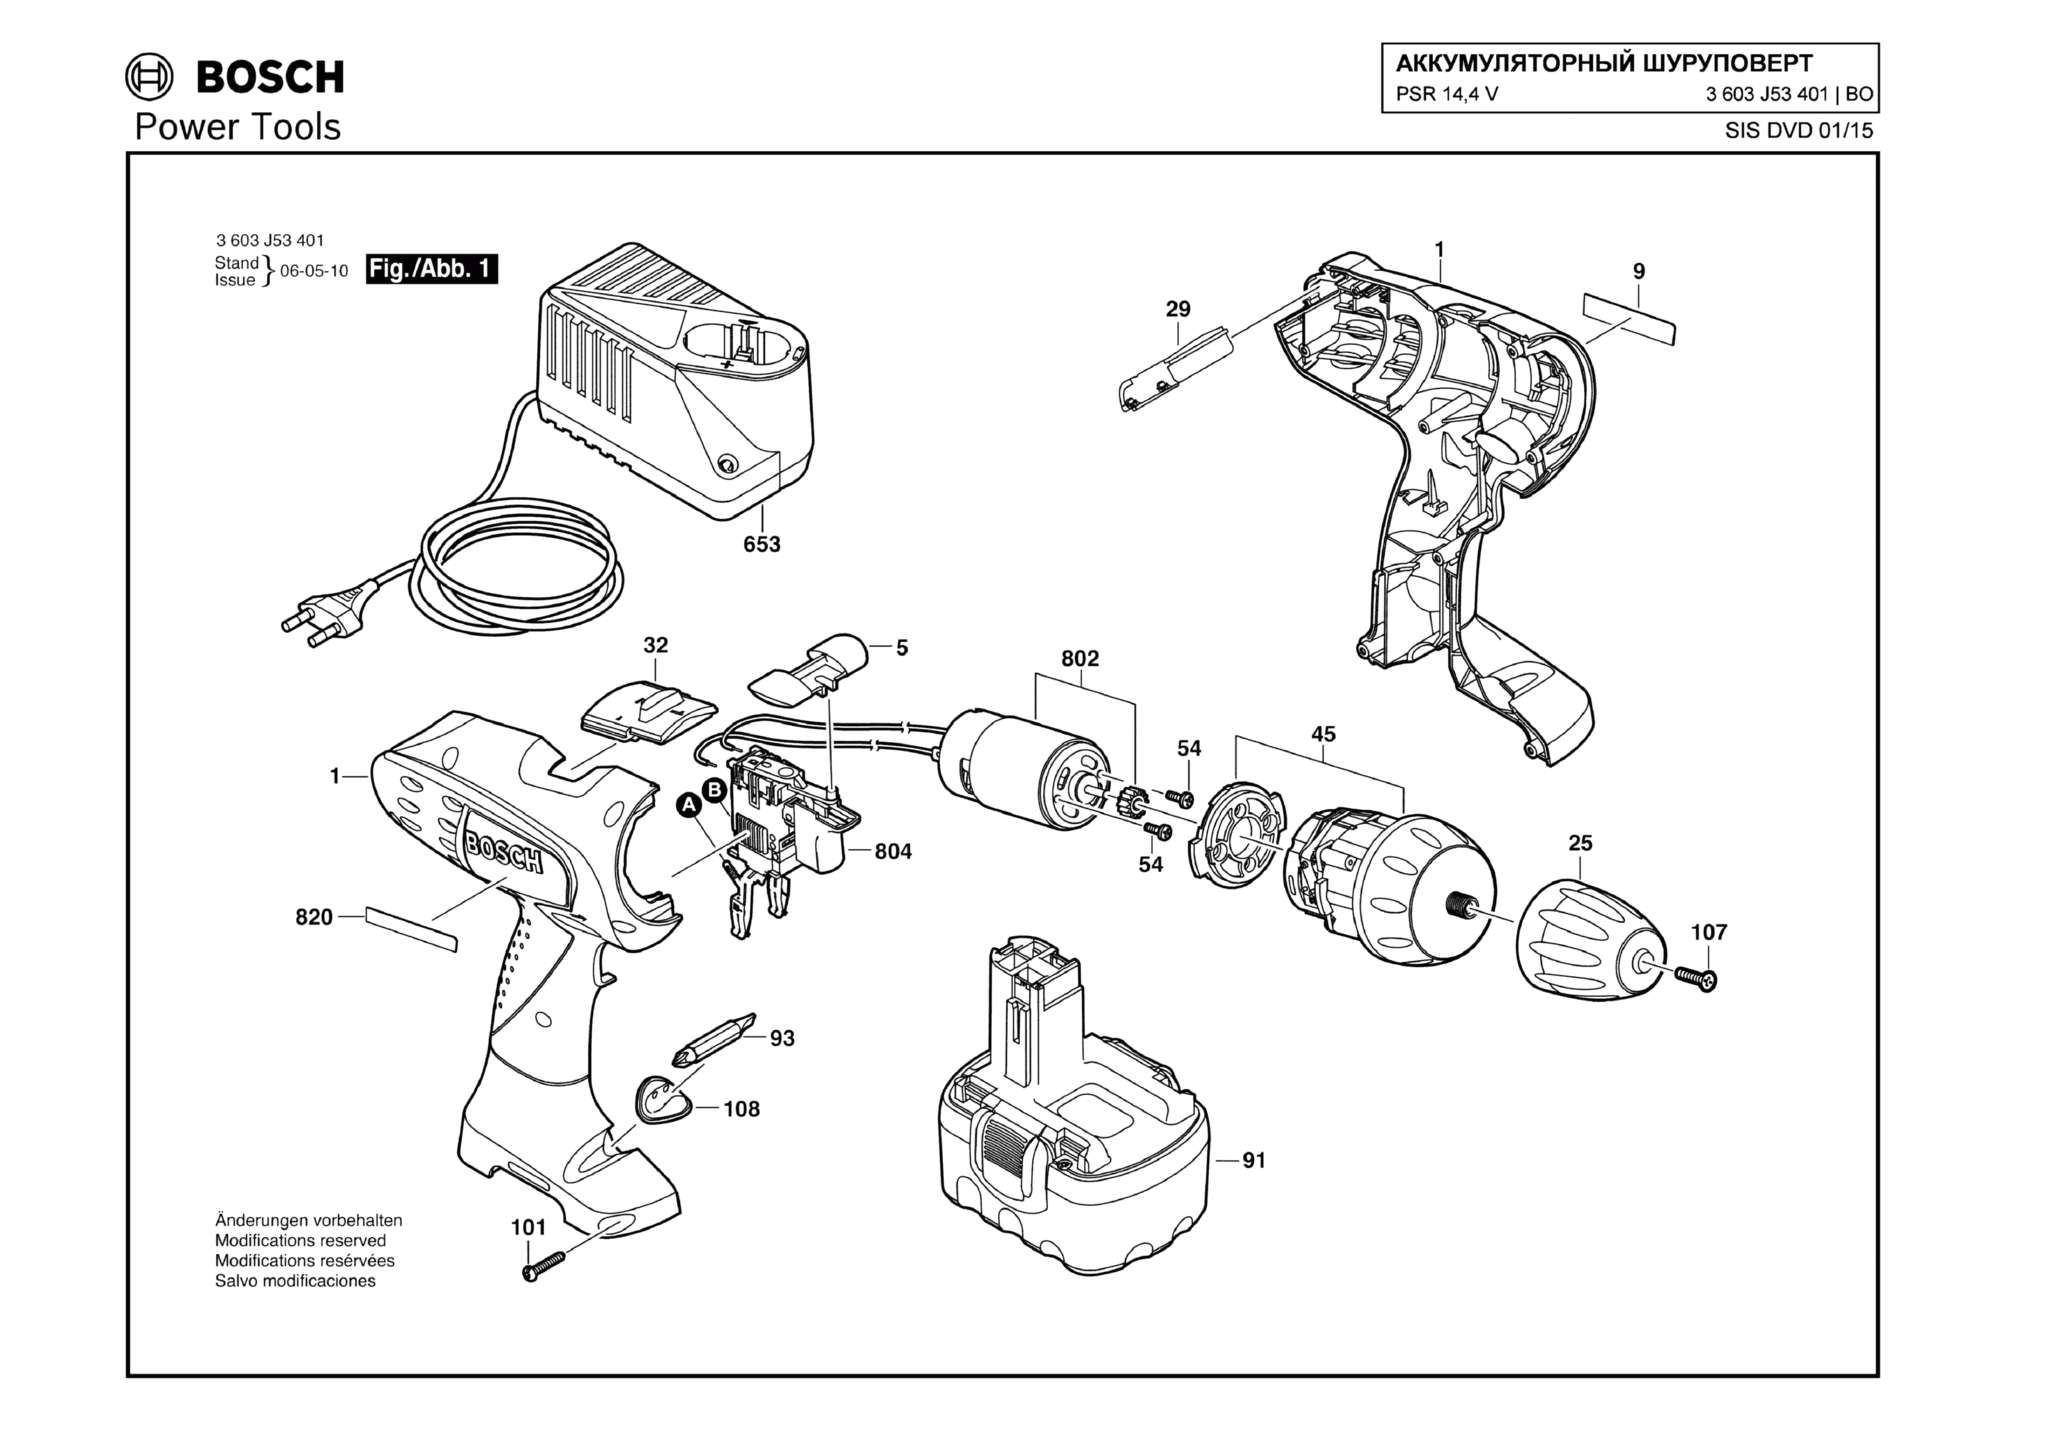 Запчасти, схема и деталировка Bosch PSR 14,4 V (ТИП 3603J53401)